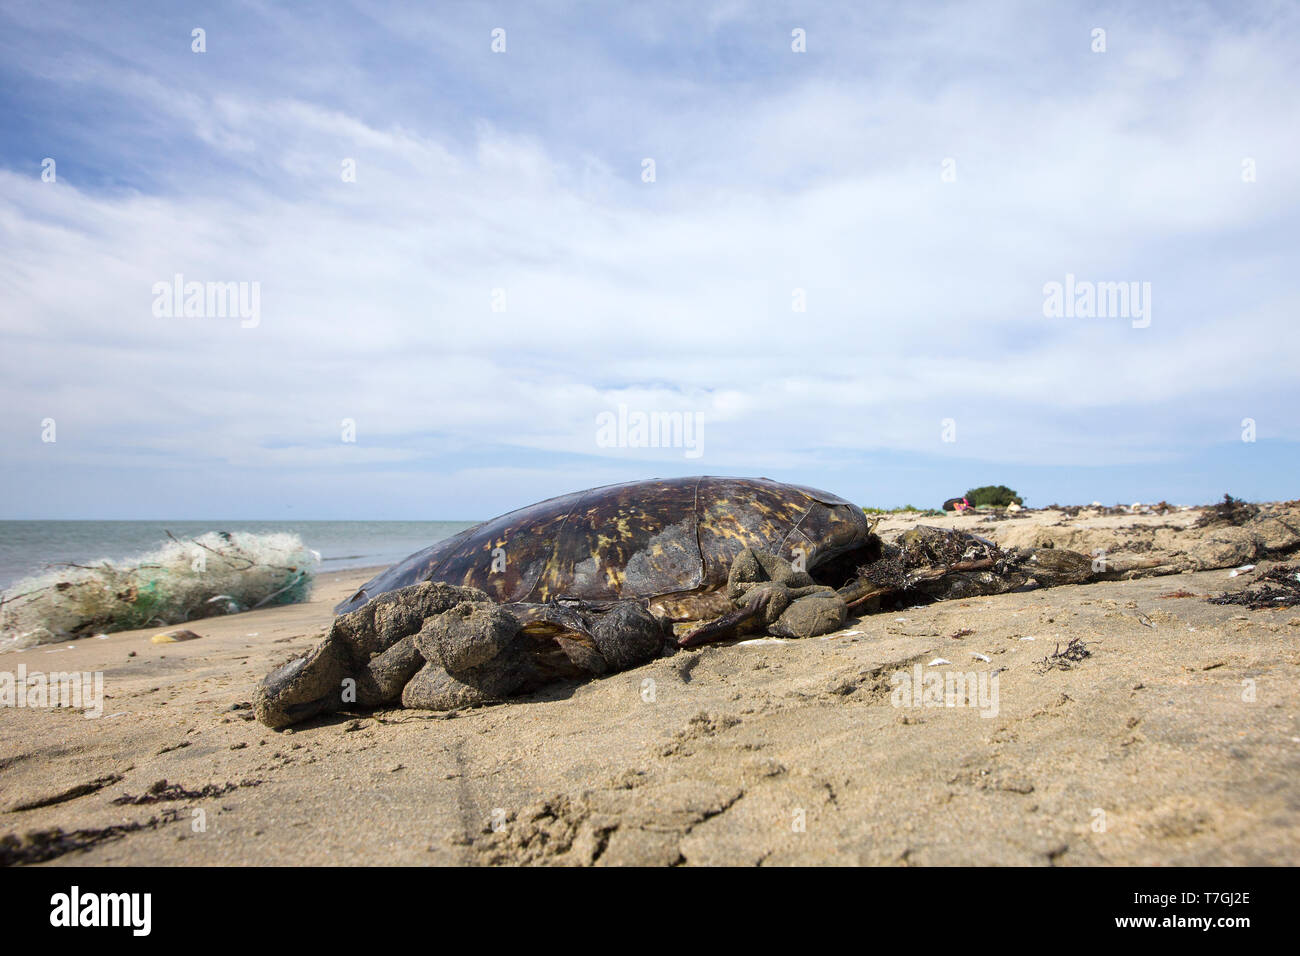 Dead sea turtle lavato fino sulla spiaggia Foto Stock